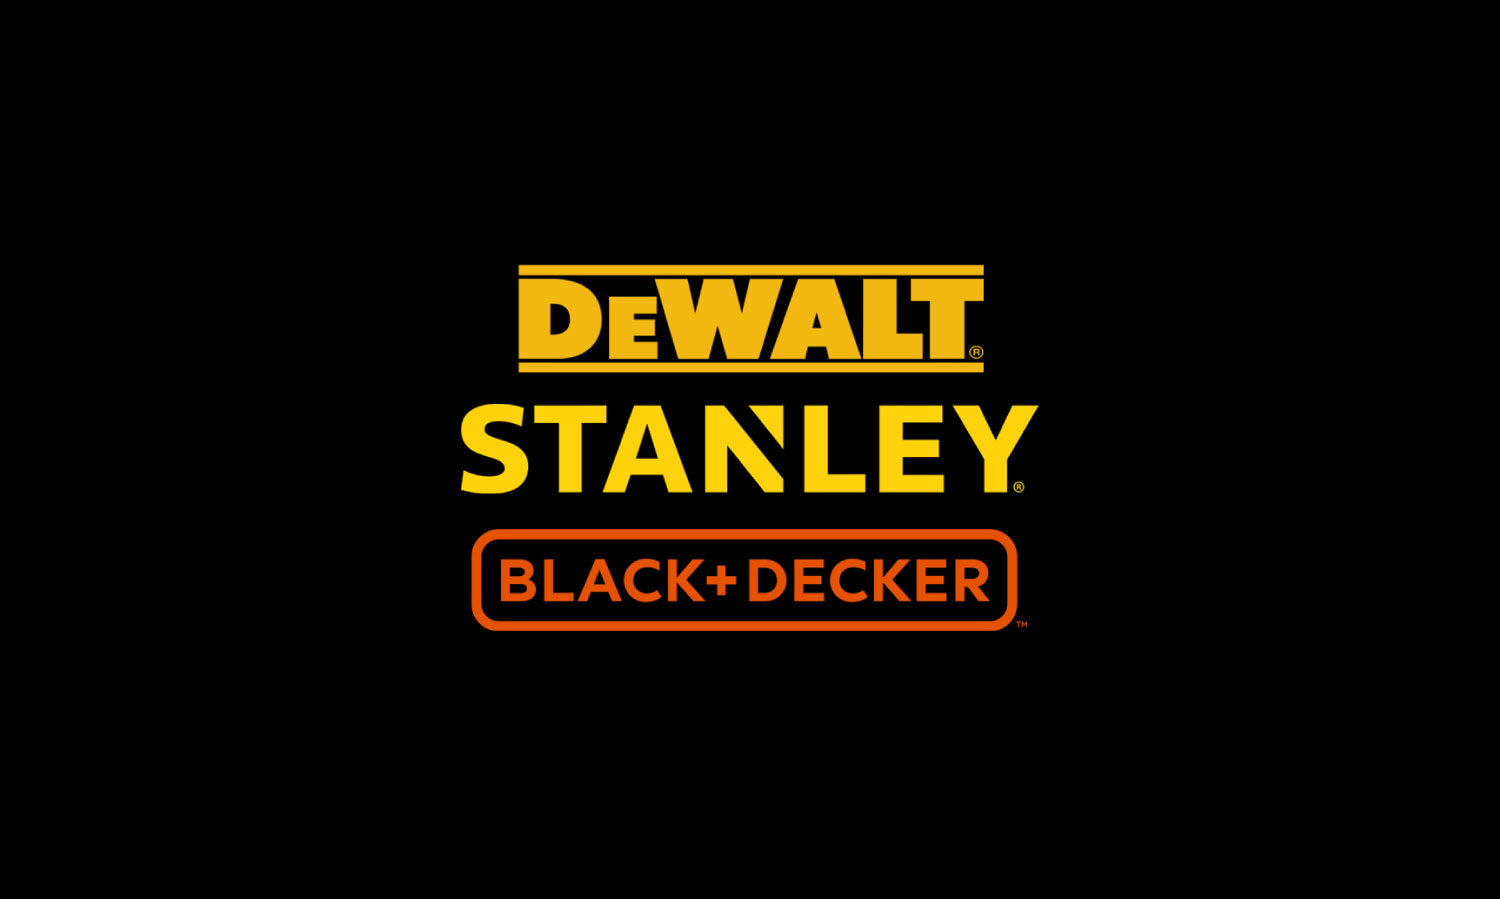 Dewalt, Stanley y Black + Decker en herramientas